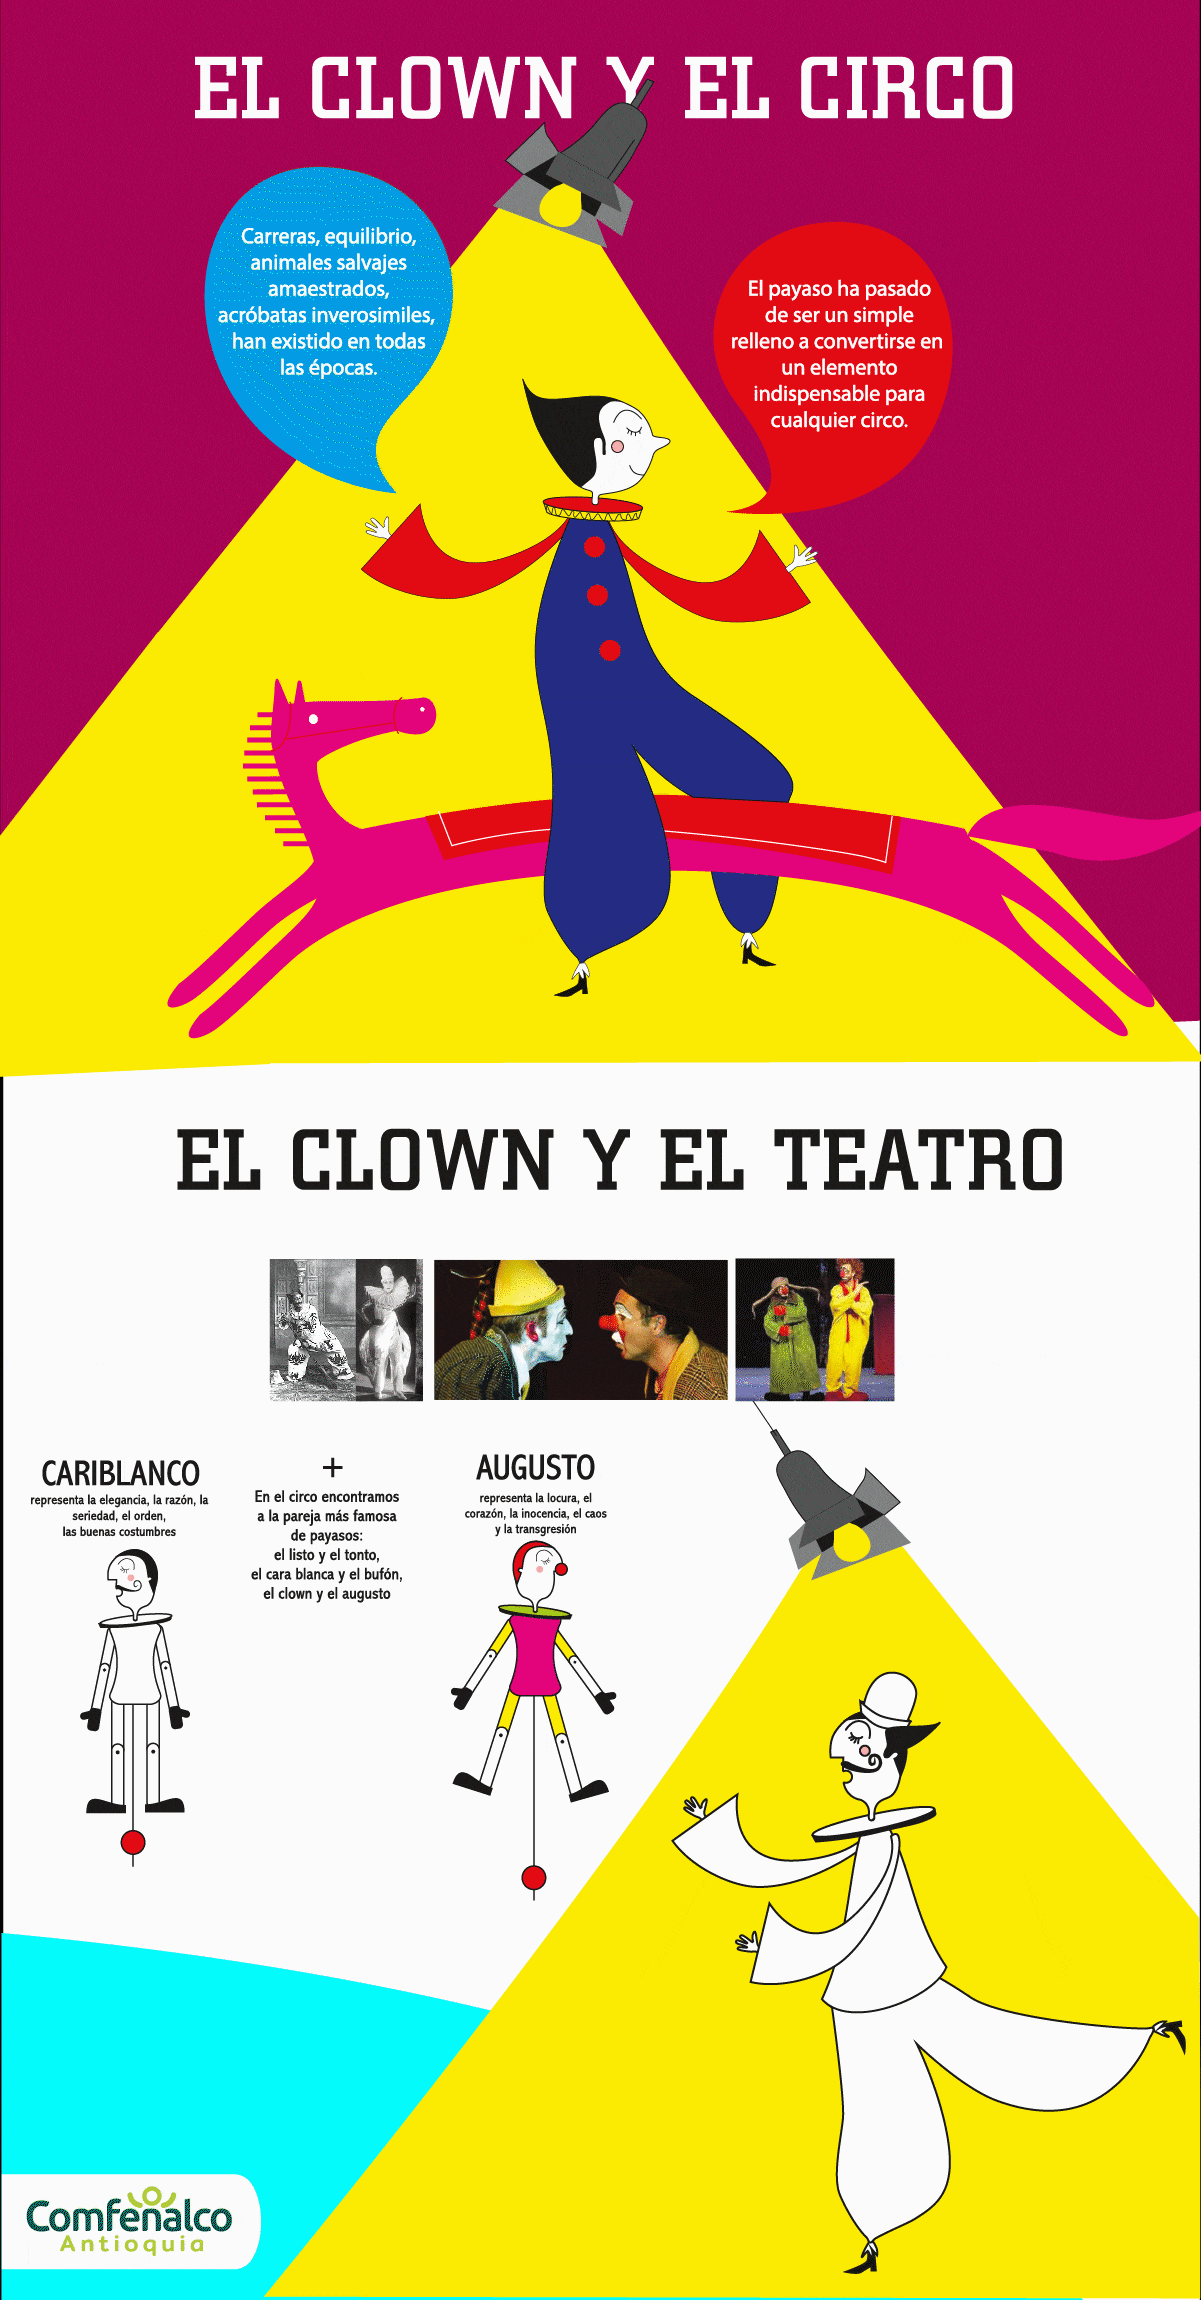 El clown y el circo